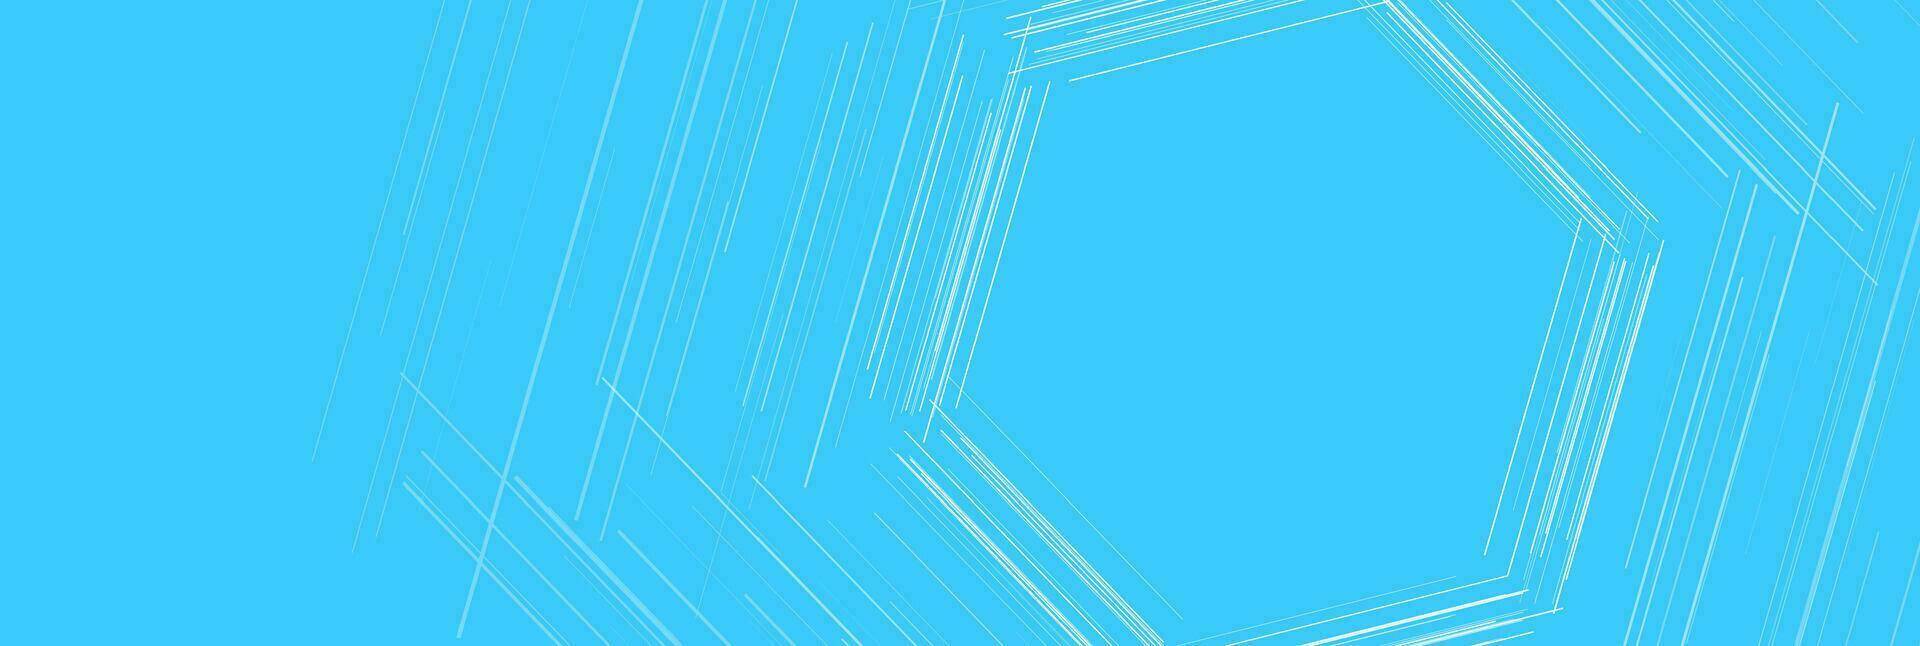 Blau sechseckig linear abstrakt futuristisch Technik Hintergrund vektor